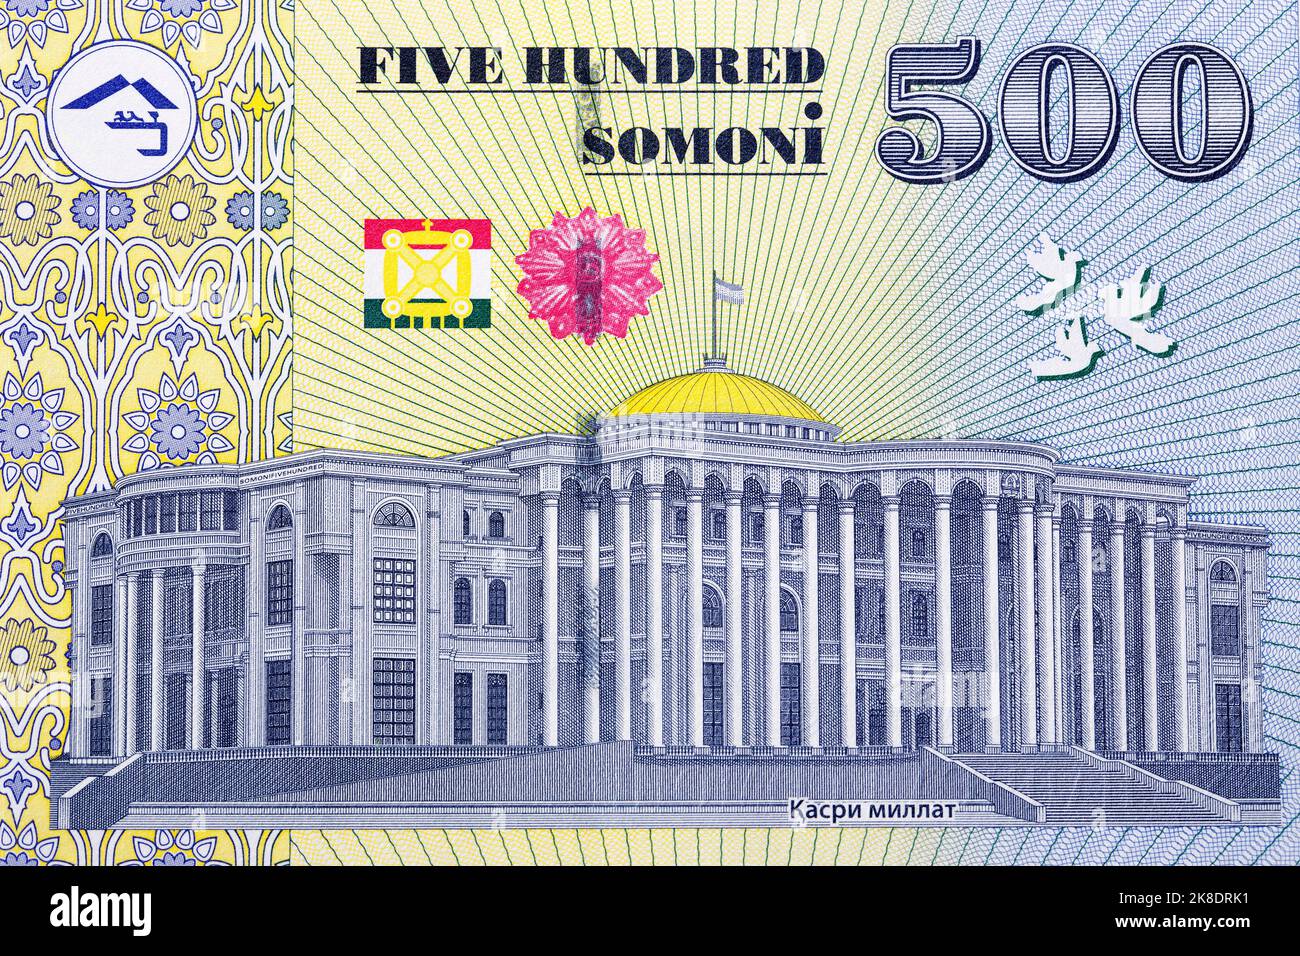 Таджикские деньги Сомони. 500 Сомони. Банк Ориенбанк Таджикистан. Национальный банк Таджикистана банковская карта.